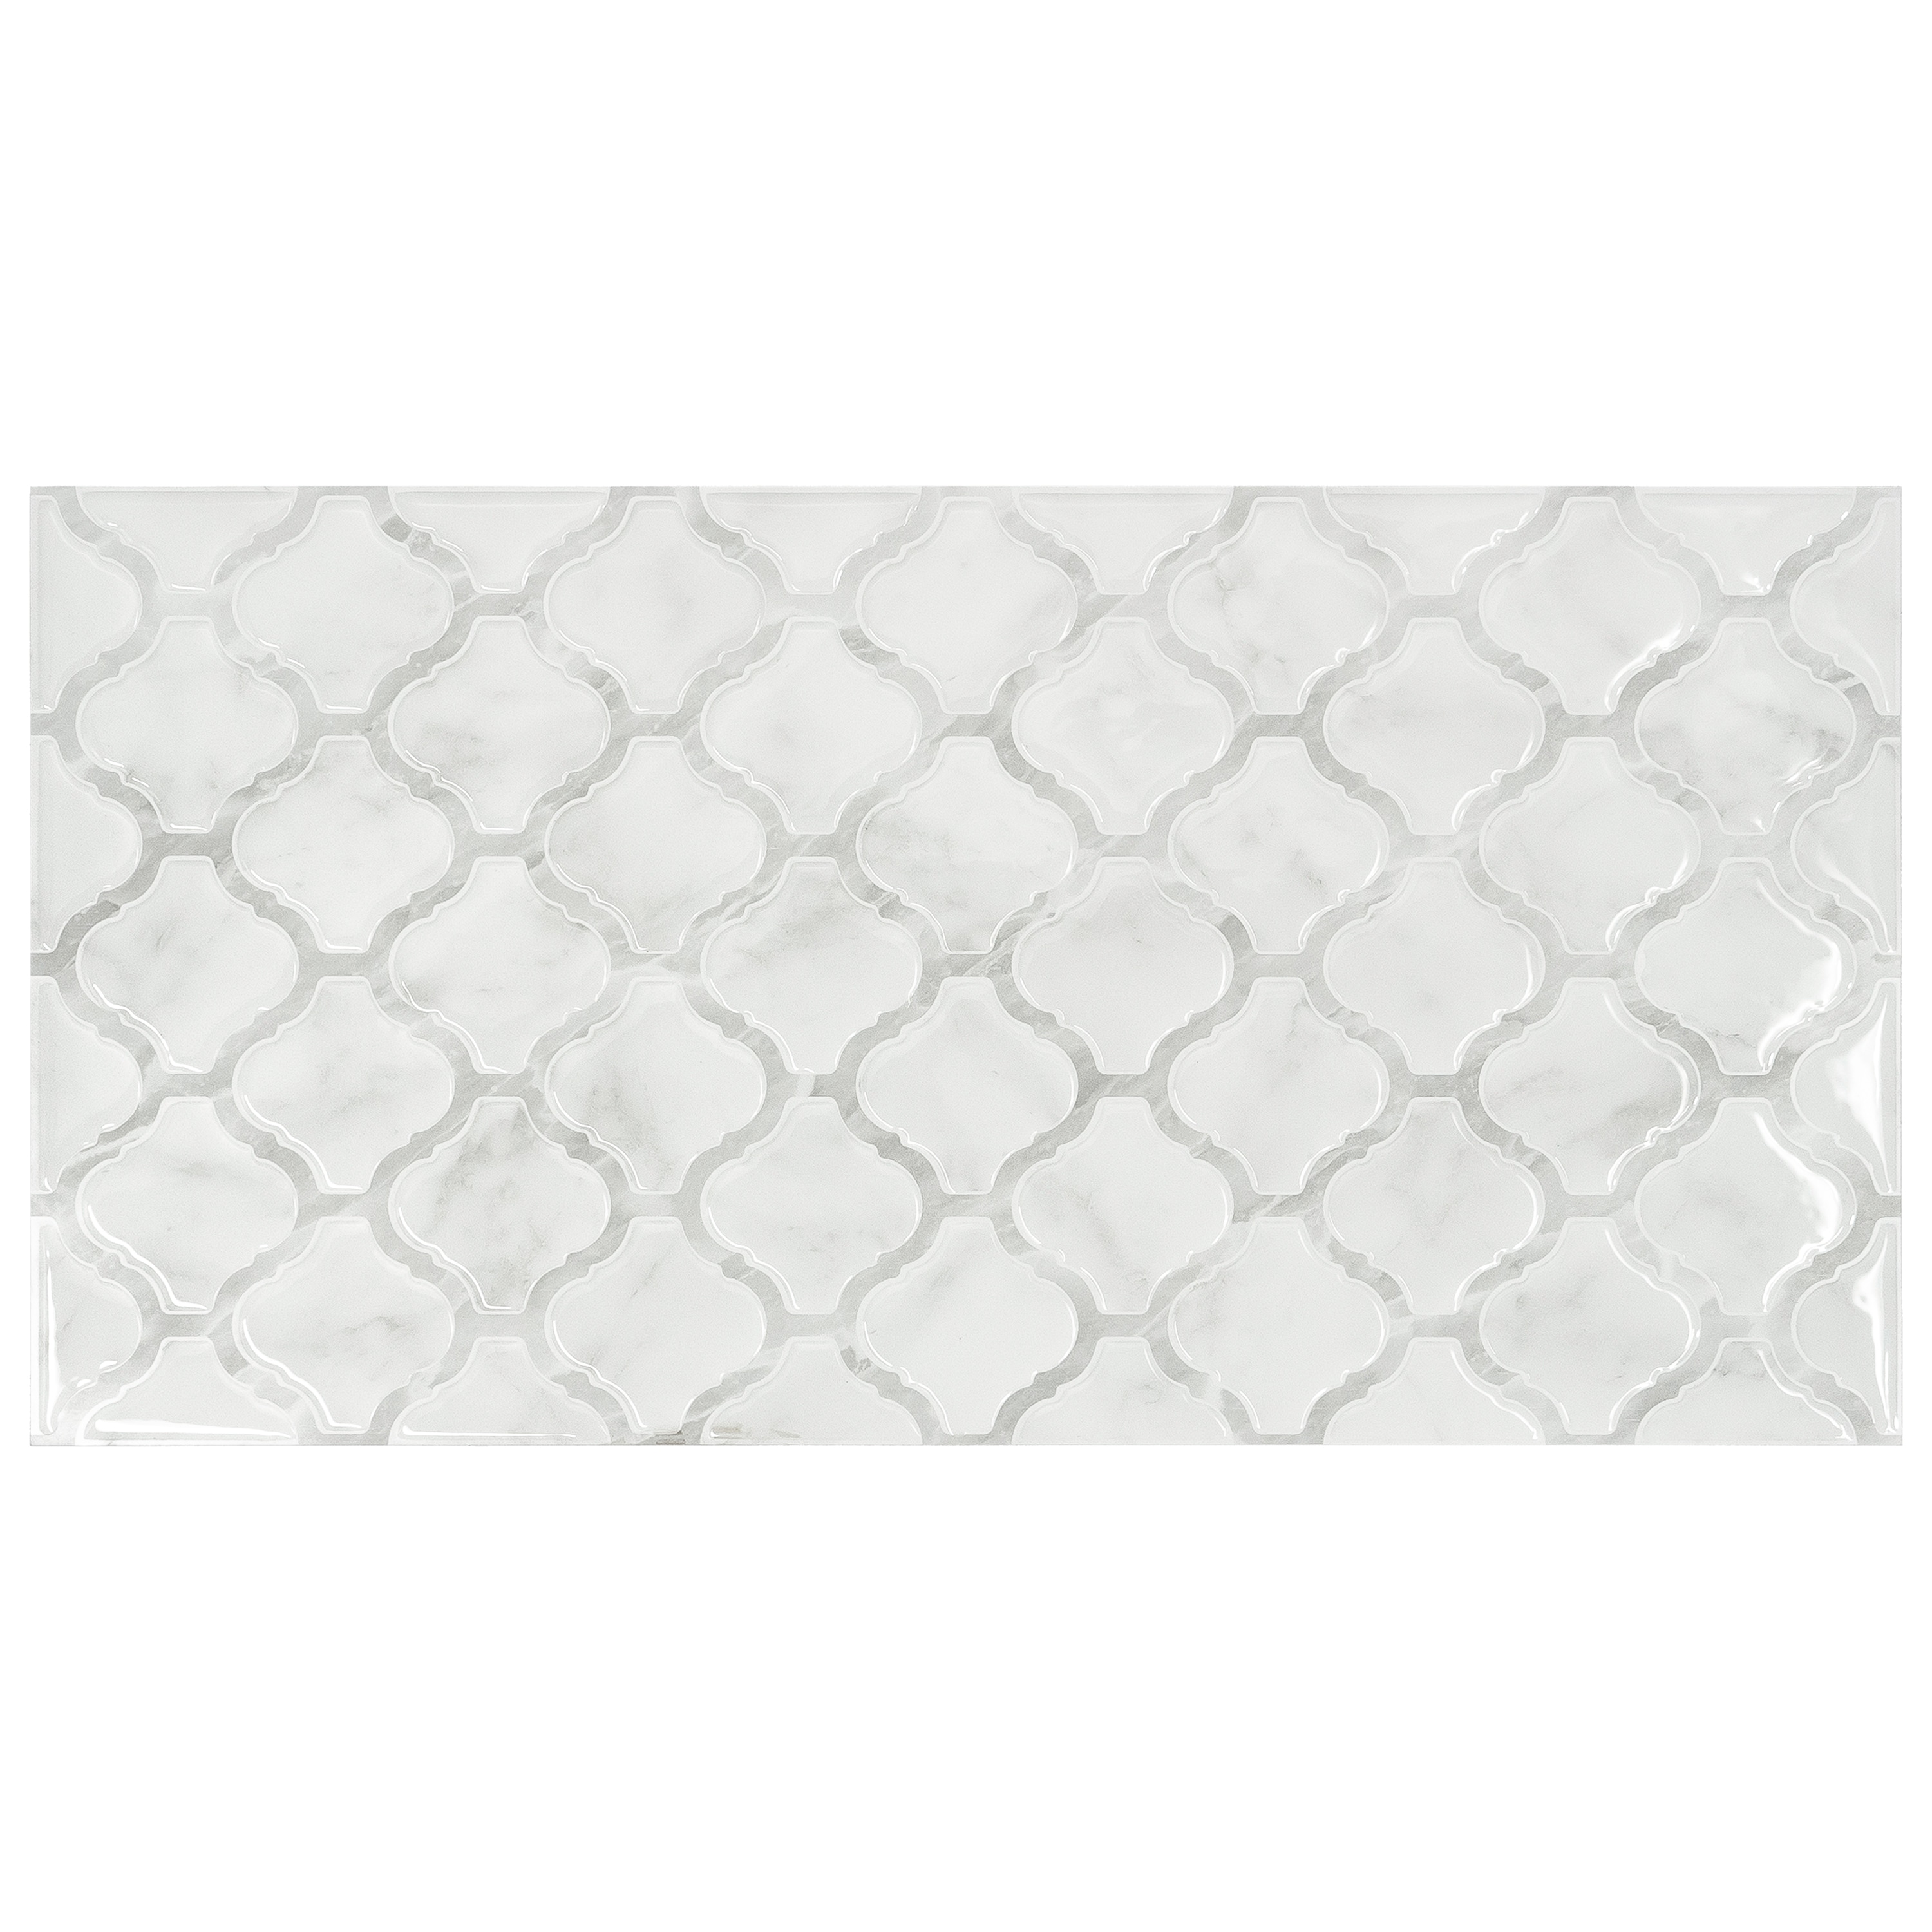 Peel and Stick Backsplash Tile - Smart Tiles Blok Beige X Large